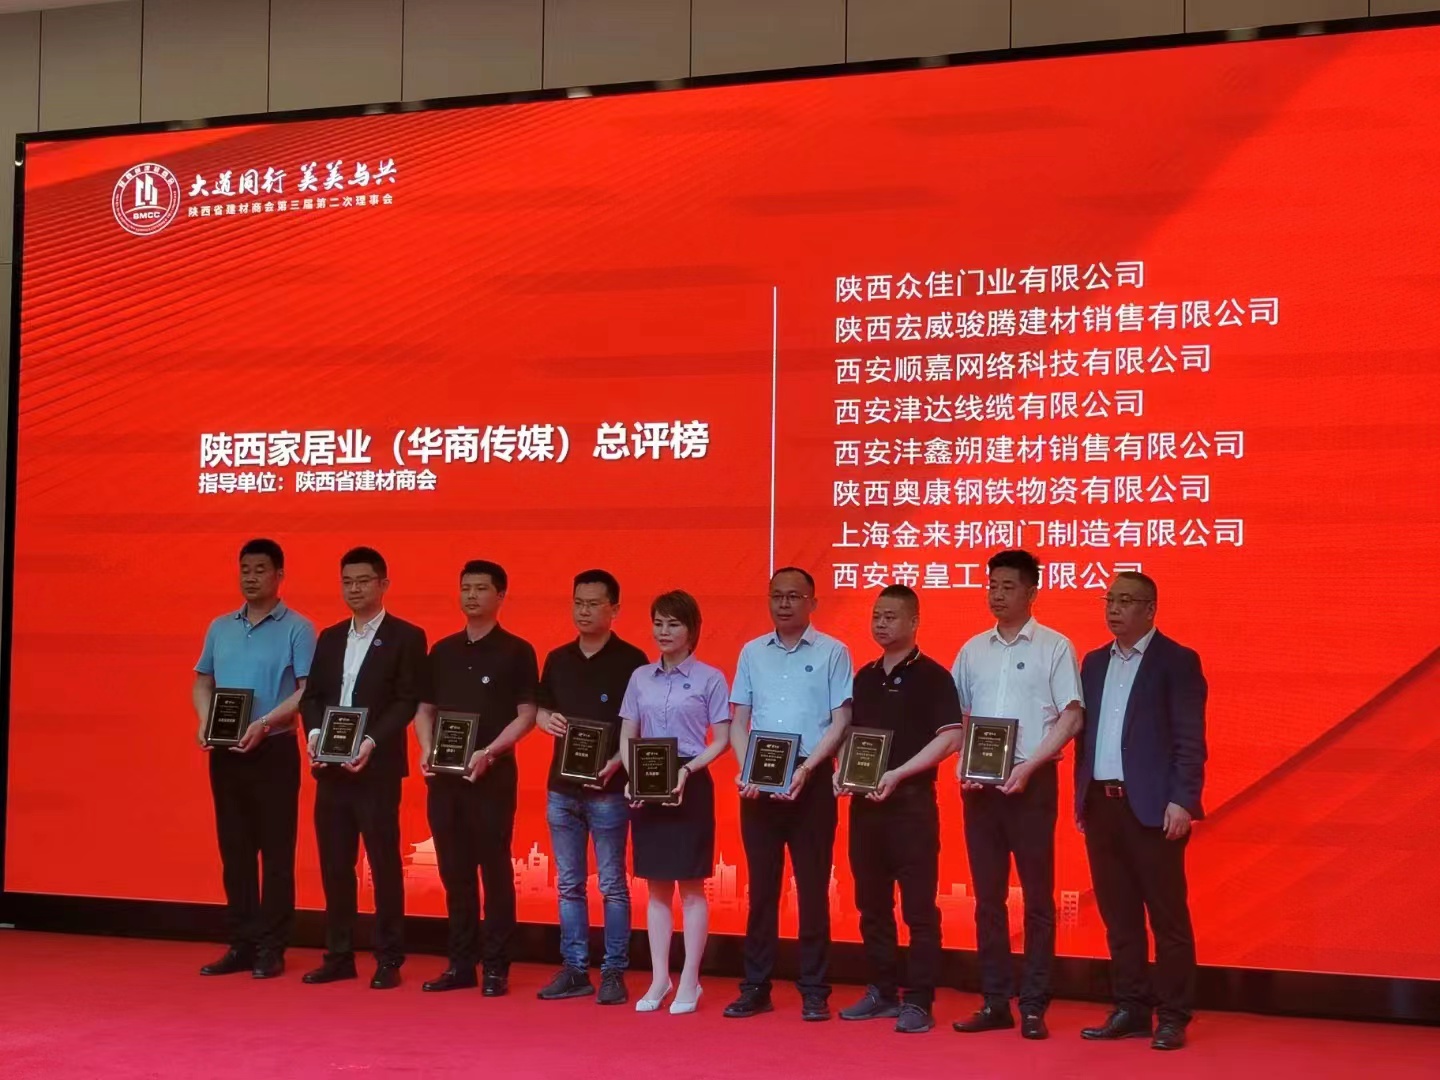 Buenas noticias||Cálidas felicitaciones a Jinlaibang Valve y Aokang Iron and Steel Co., Ltd. por ganar la Lista de evaluación general de muebles para el hogar de Shaanxi 2022 del 